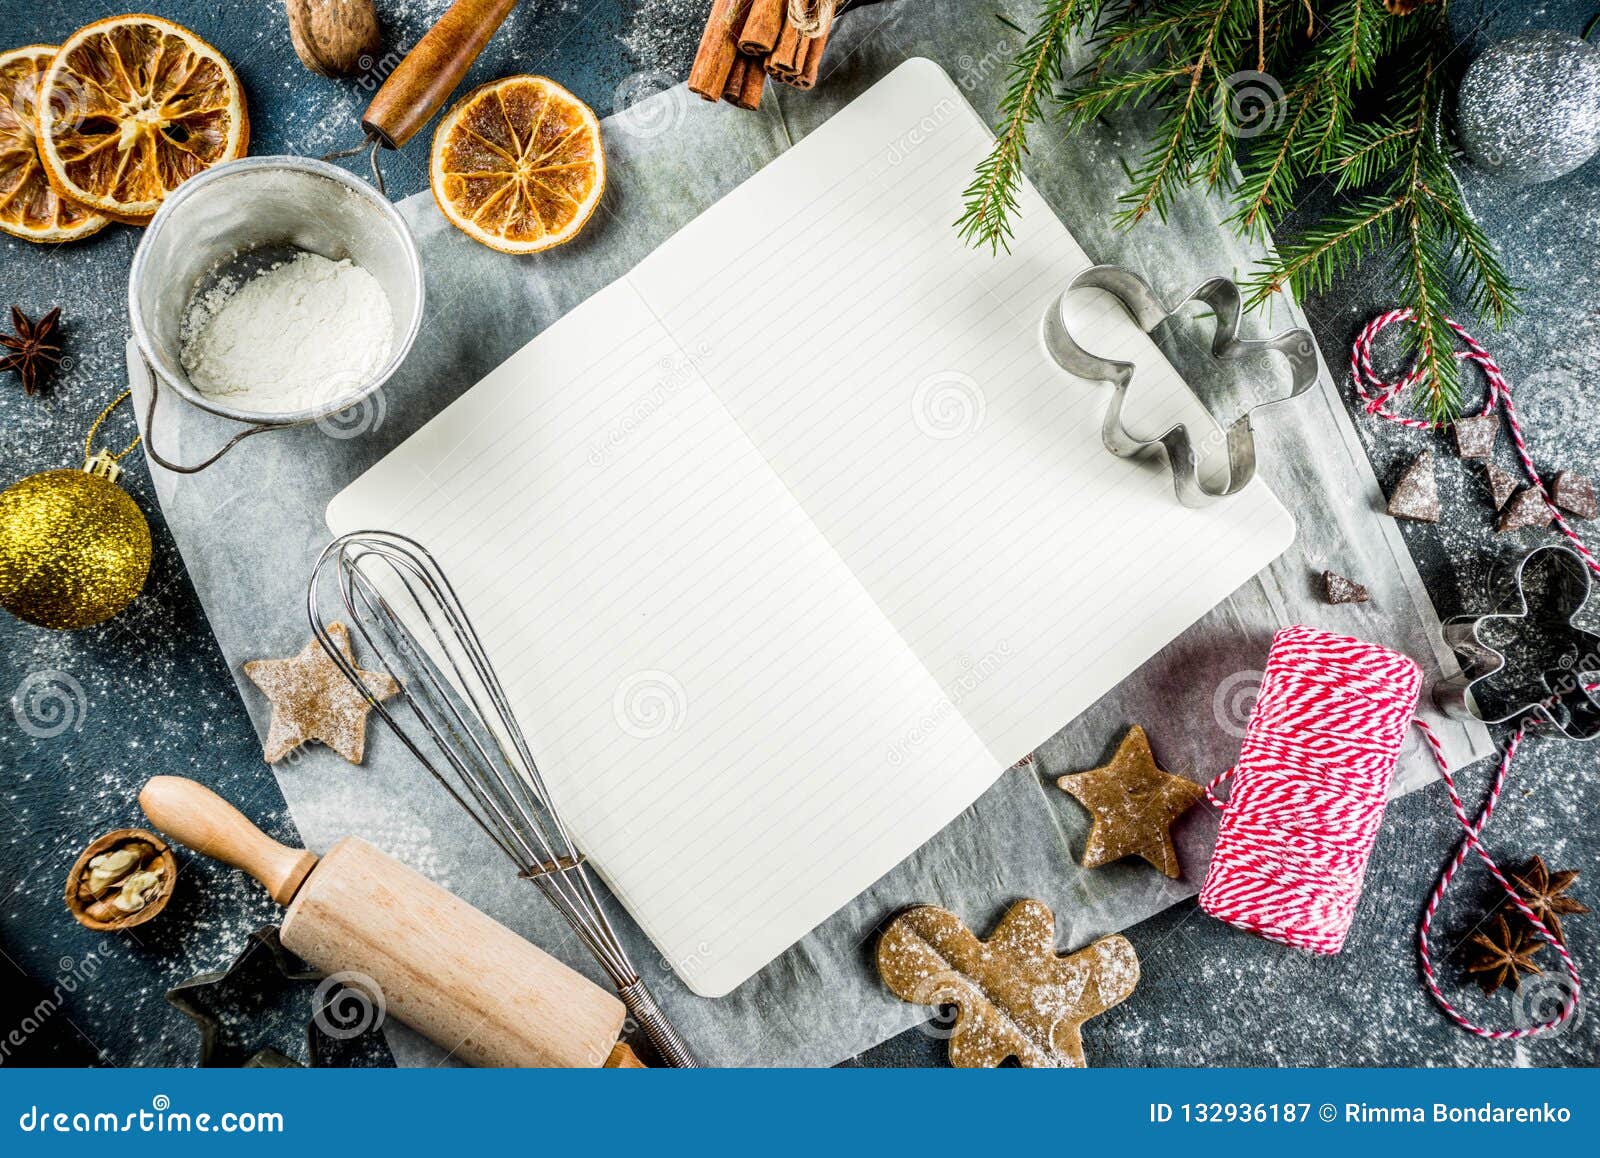 Cucina Natale Ricette.Libro Di Cucina Vuoto Per Le Ricette Di Natale Immagine Stock Immagine Di Torta Grunge 132936187